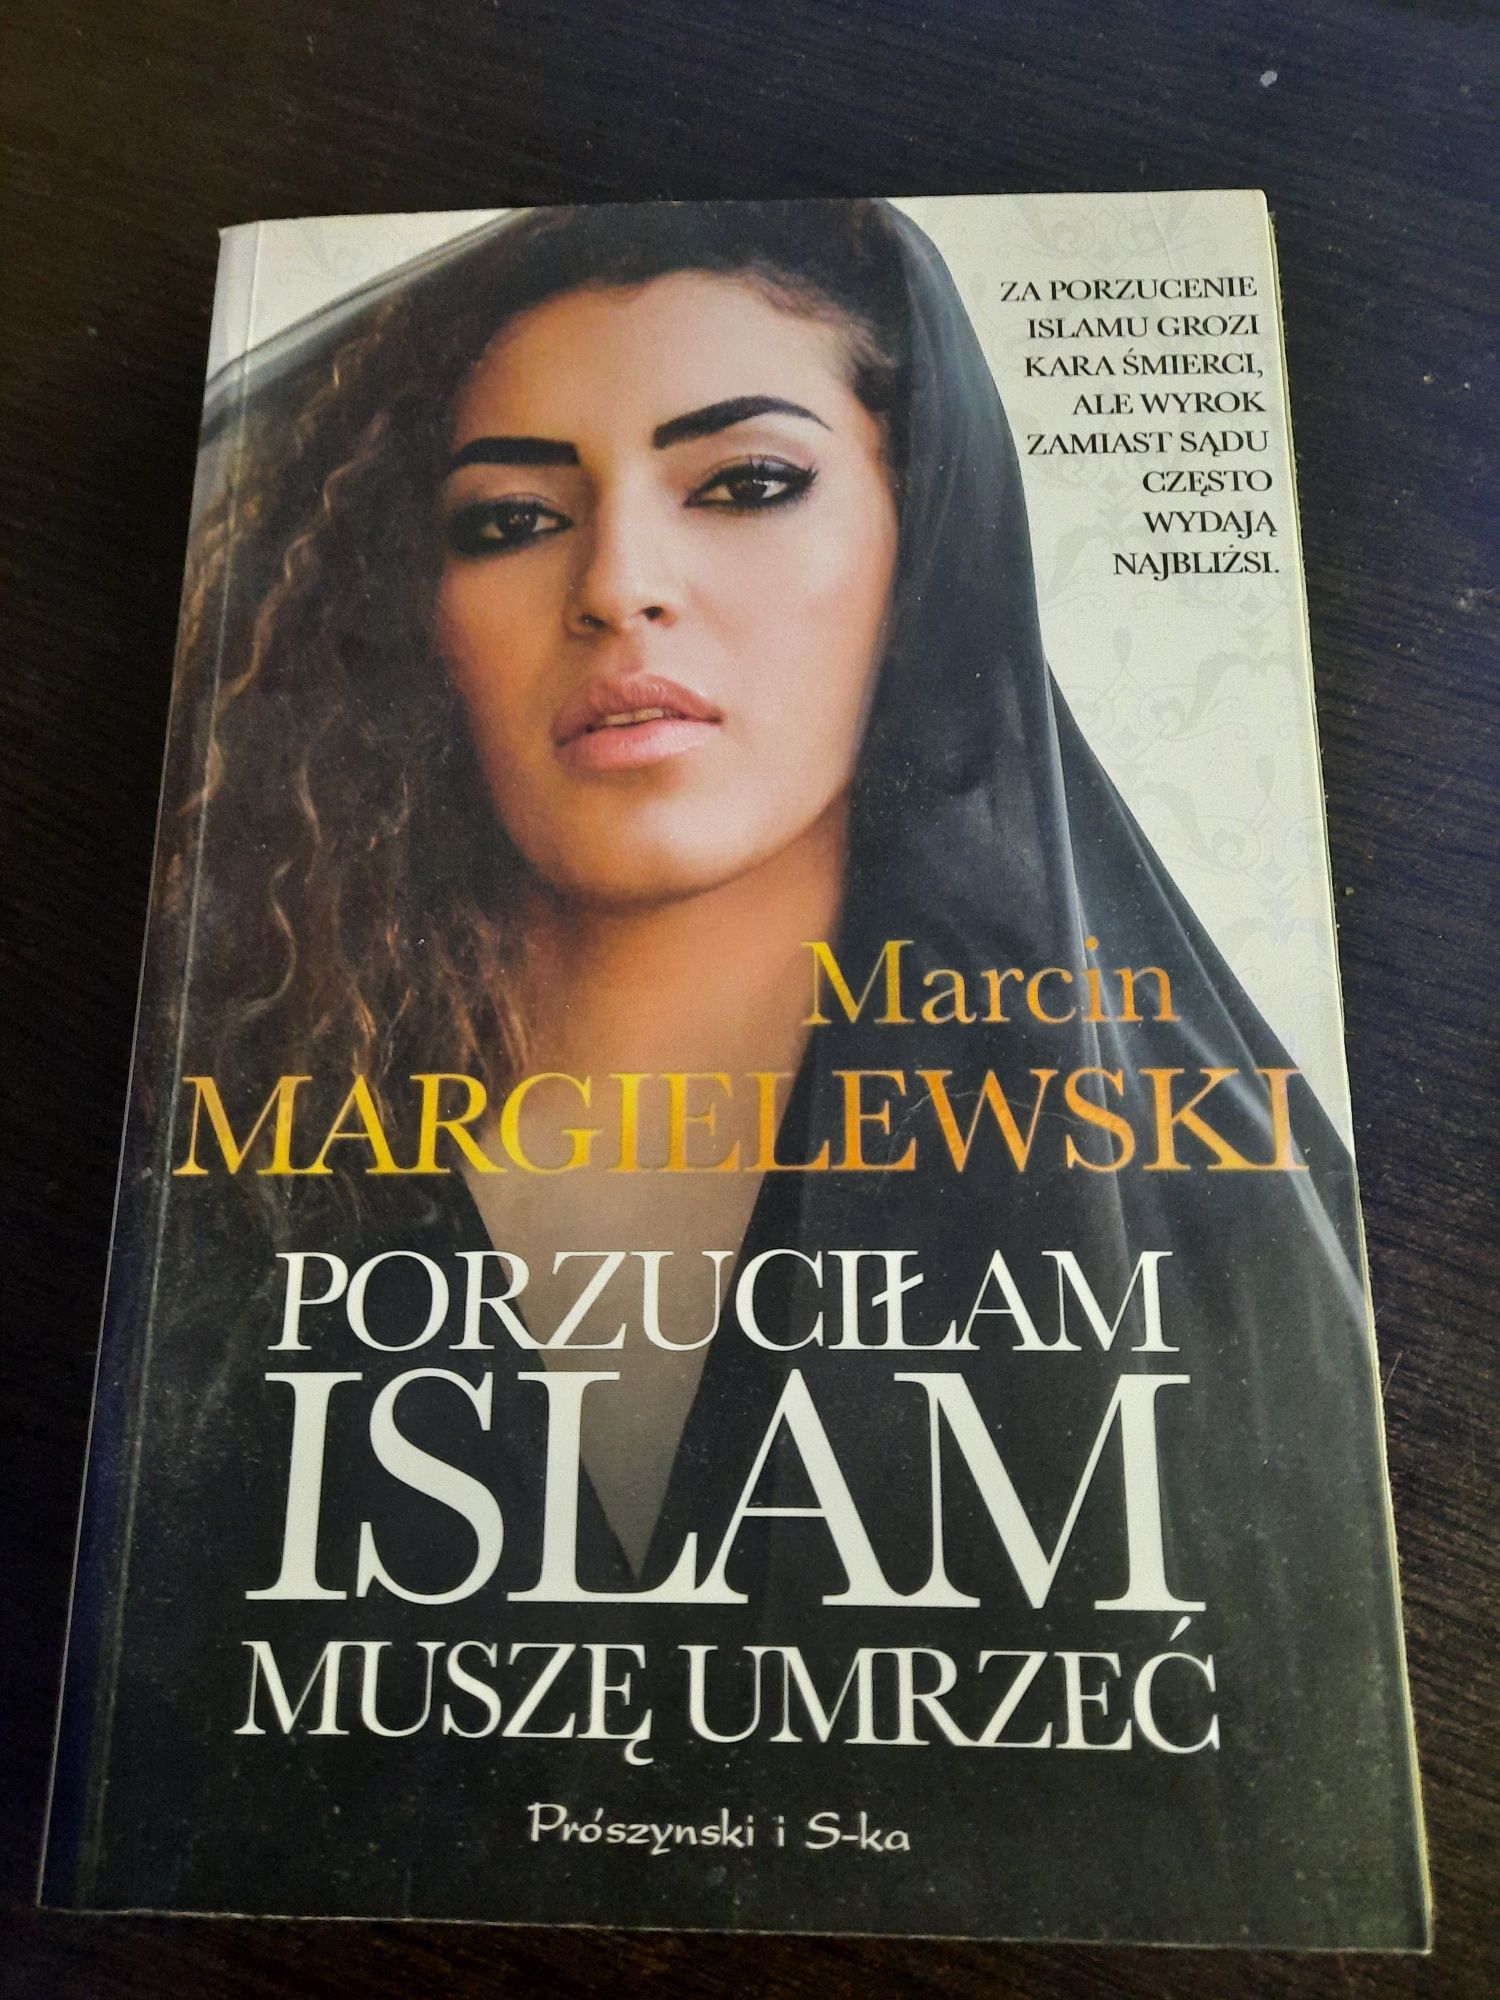 Marcin Margielewski Porzuciłam islam muszę umrzeć